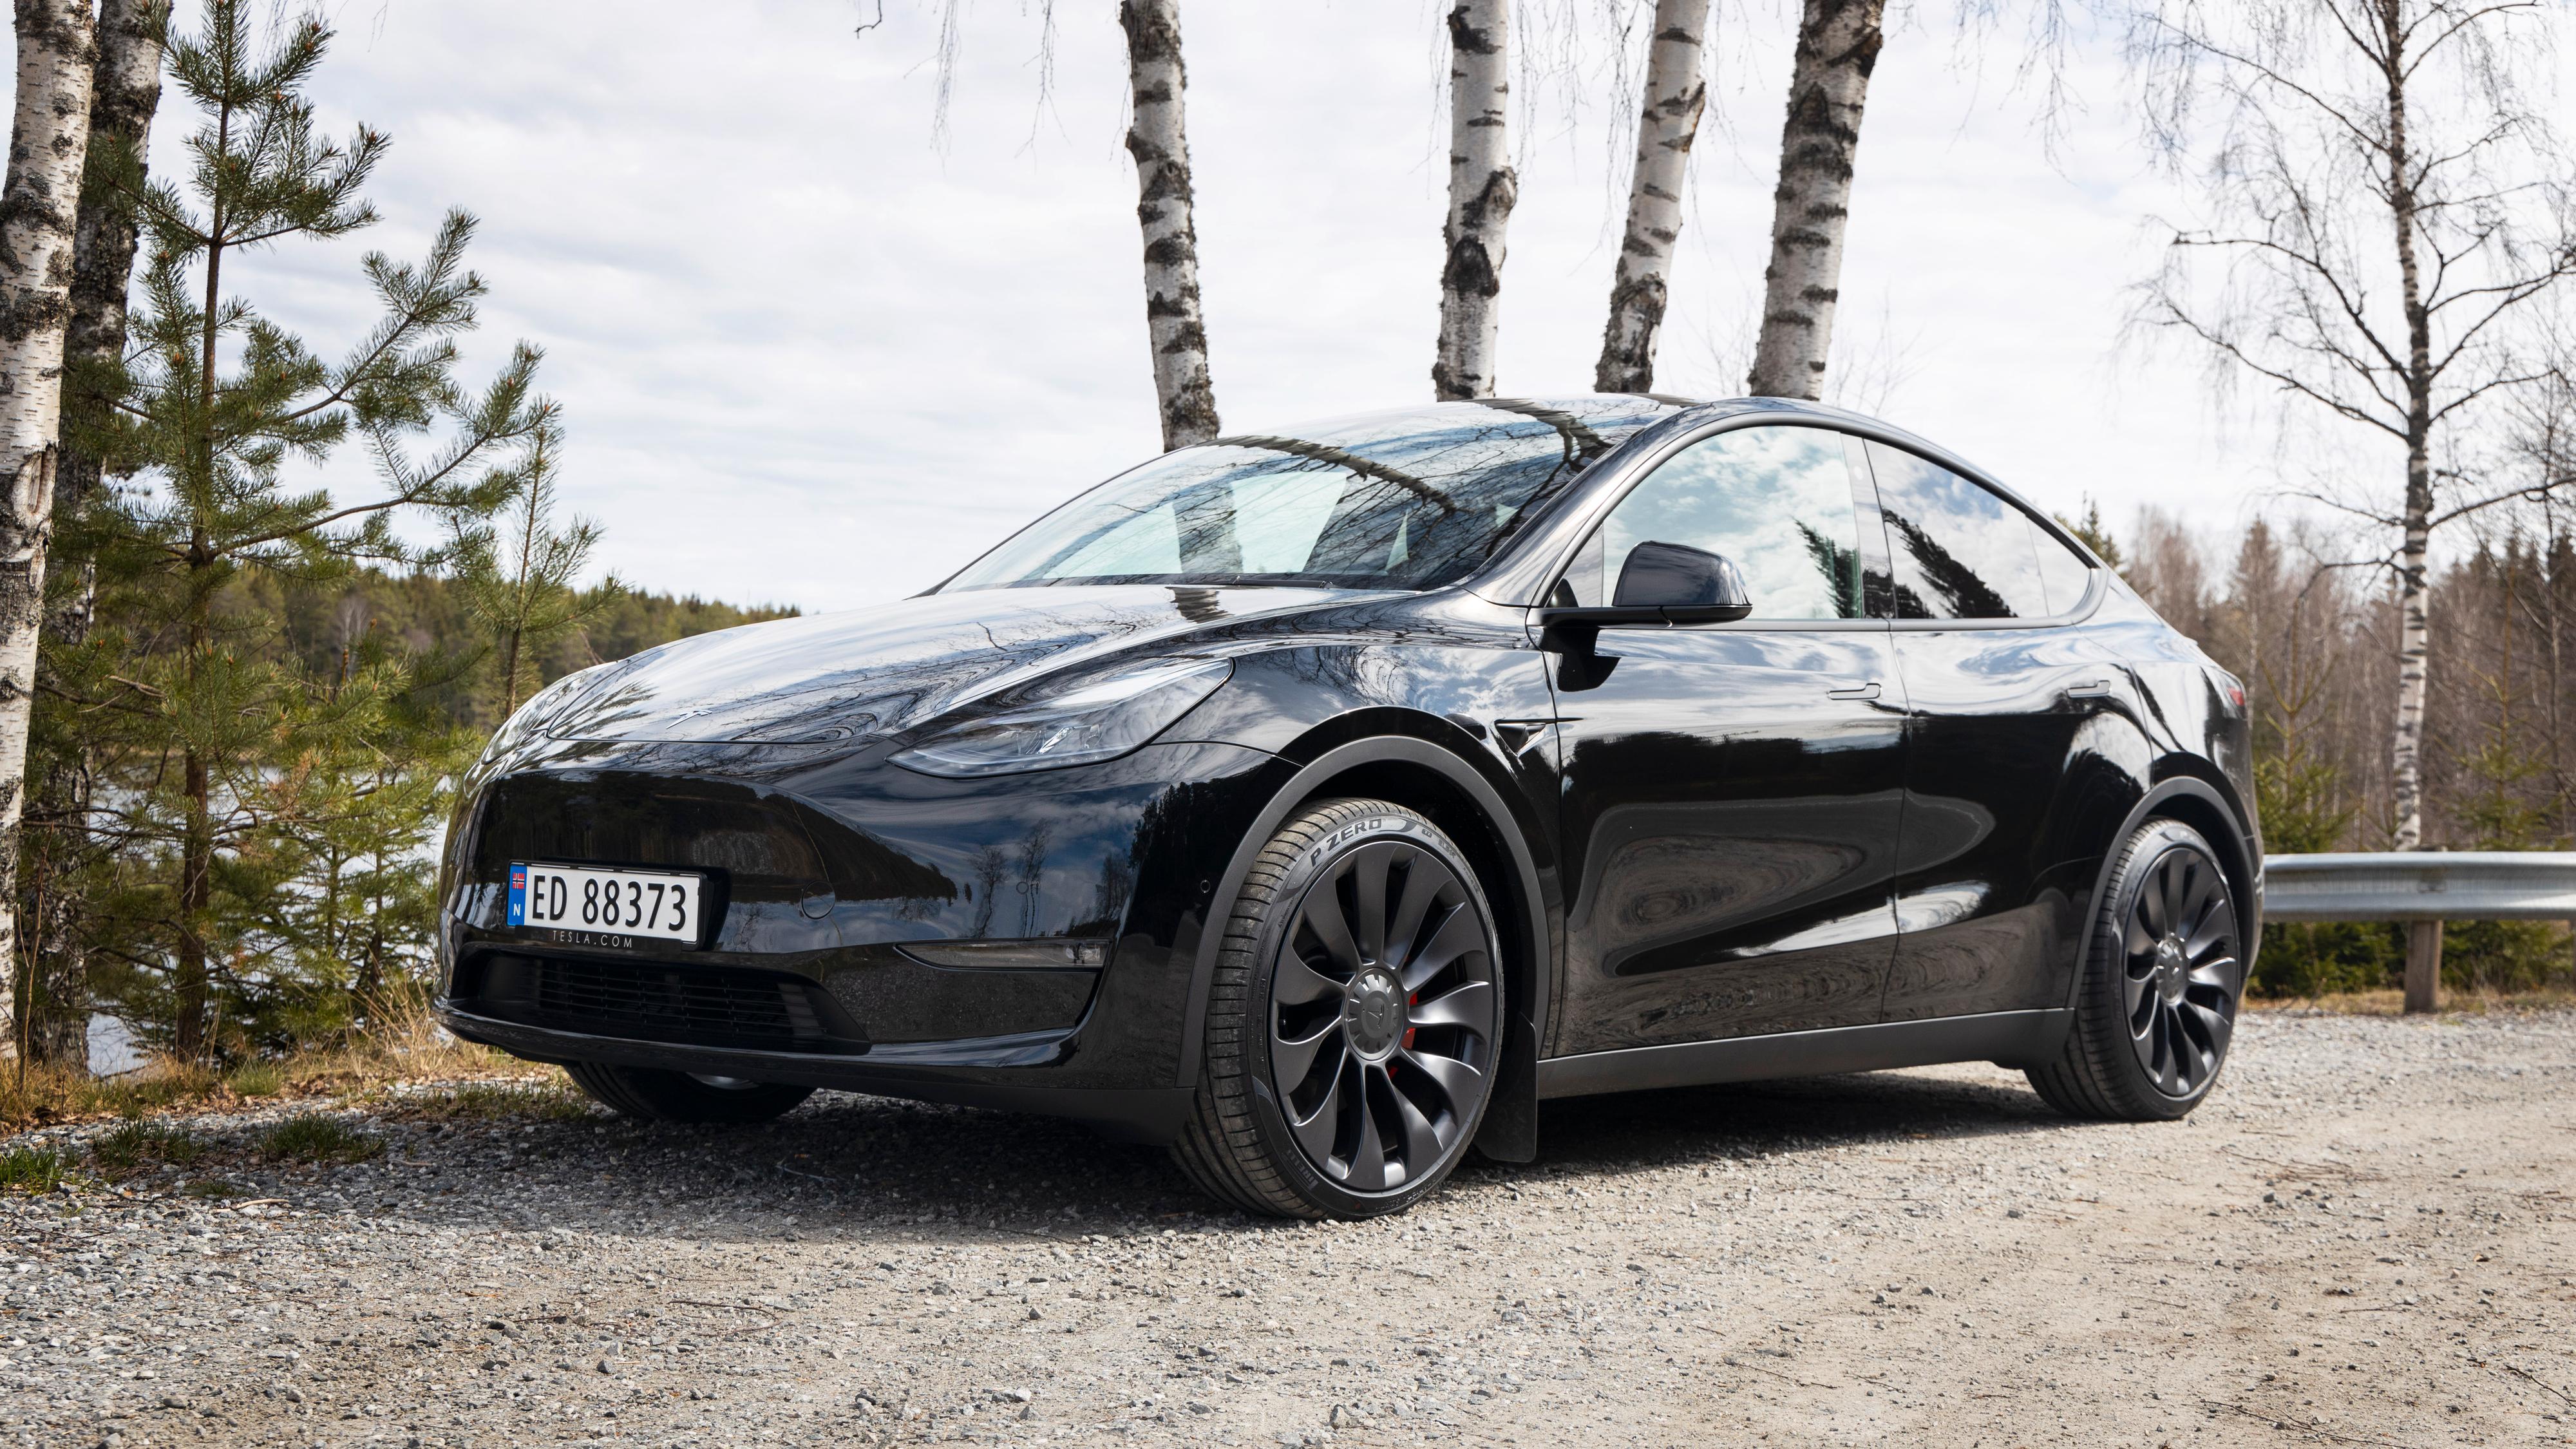 Tesla Model Y tok et nytt steg mot årets mest solgte-tittelen i september. Over 3000 nye Model Y ble fasit. 